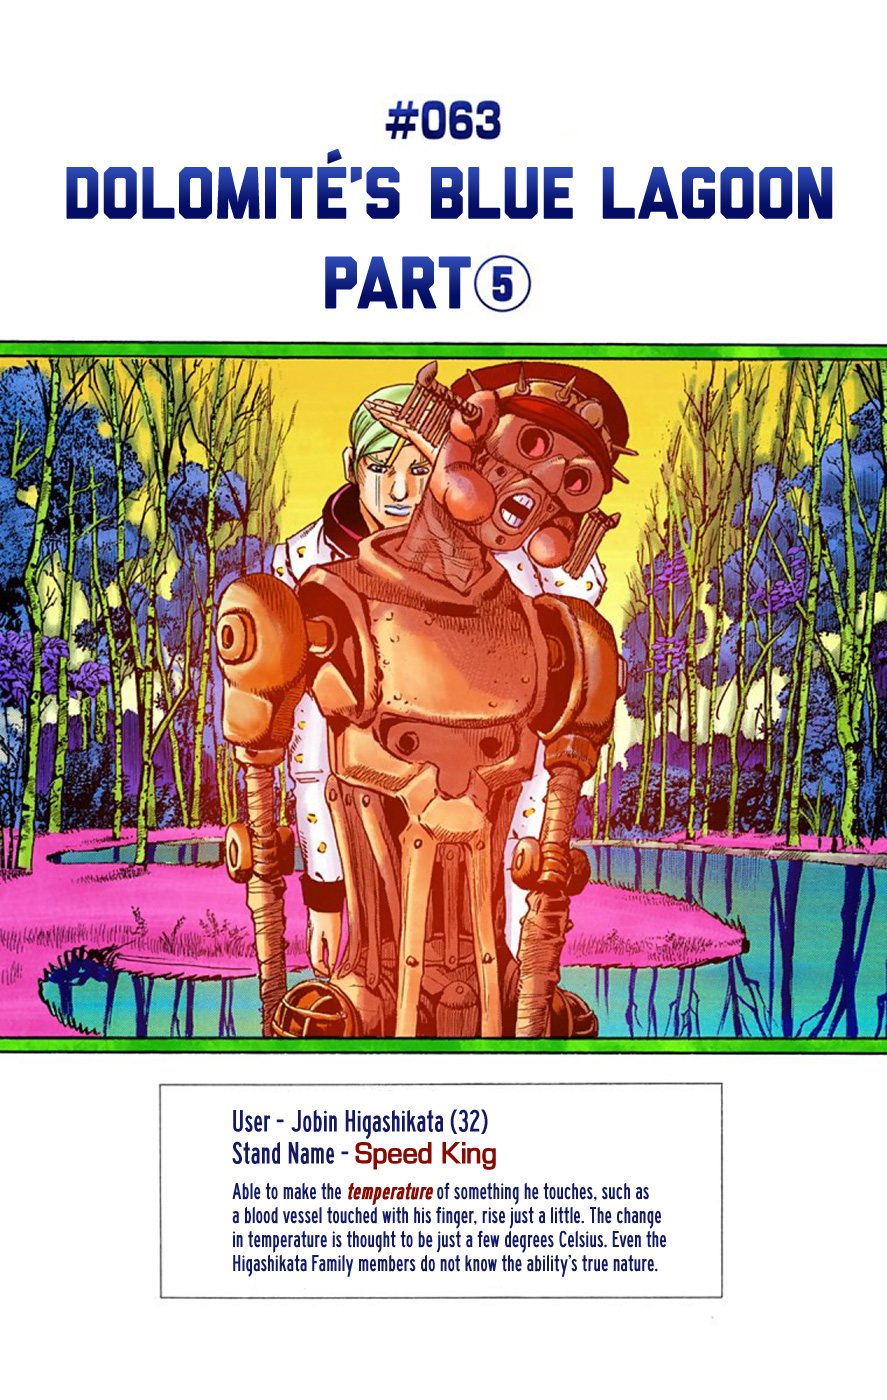 JoJo's Bizarre Adventure Part 8 JoJolion (Official Colored) Vol. 16 Ch. 63 Dolomité's Blue Lagoon Part 5